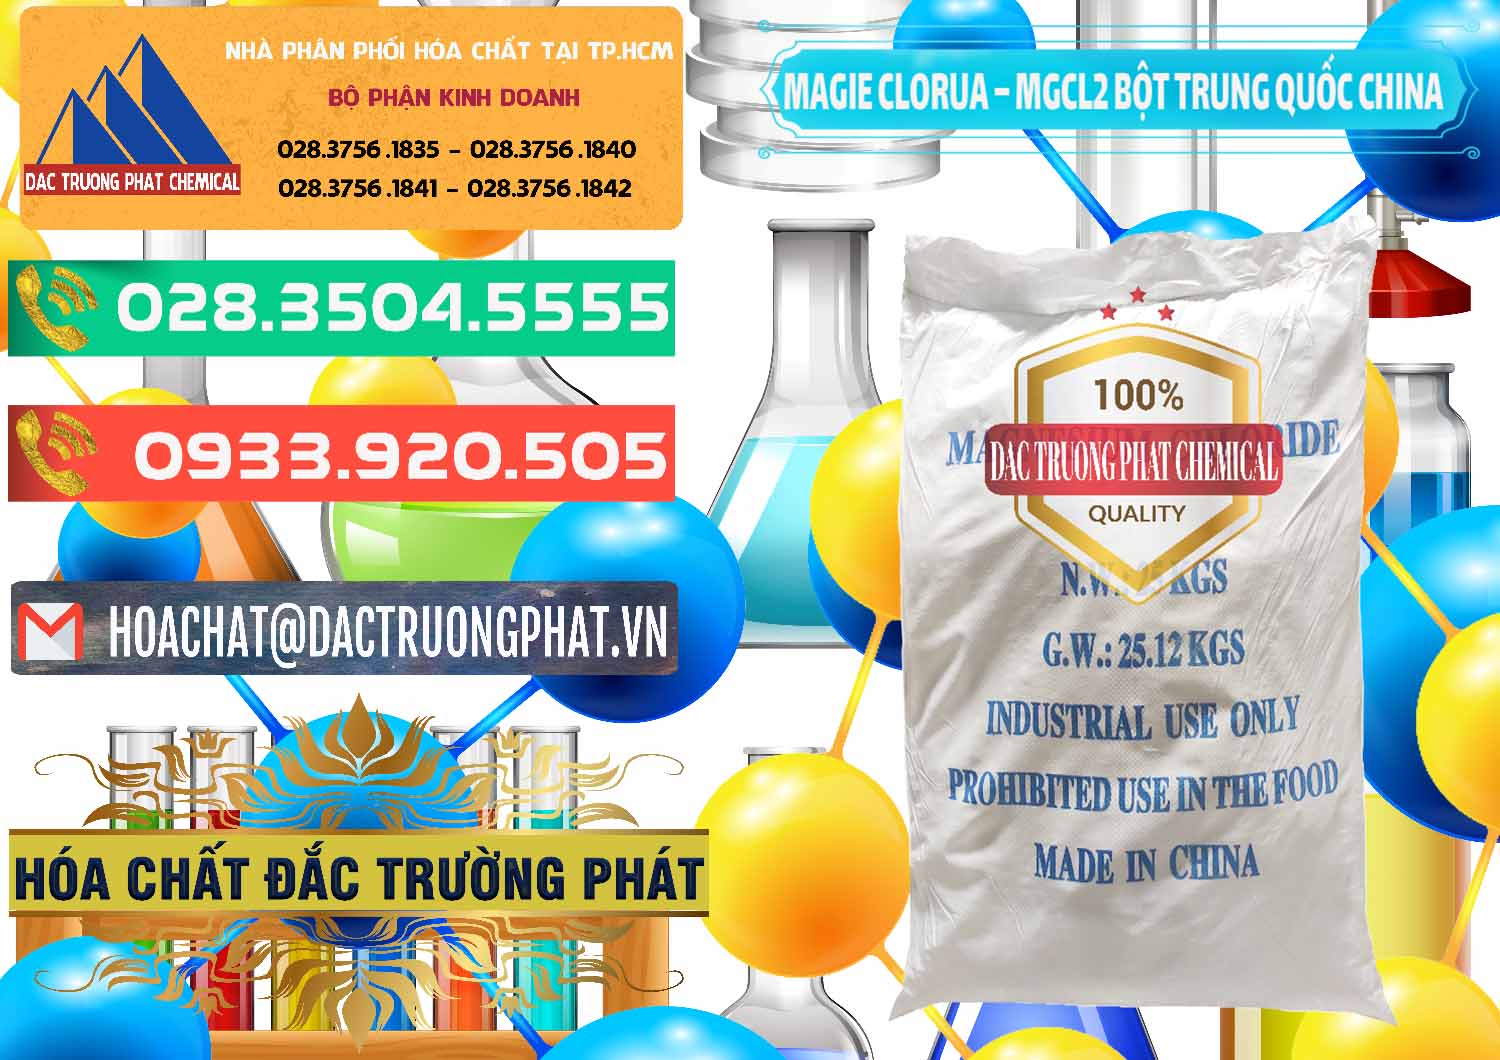 Cty bán _ cung ứng Magie Clorua – MGCL2 96% Dạng Bột Bao Chữ Xanh Trung Quốc China - 0207 - Đơn vị chuyên nhập khẩu và cung cấp hóa chất tại TP.HCM - congtyhoachat.com.vn